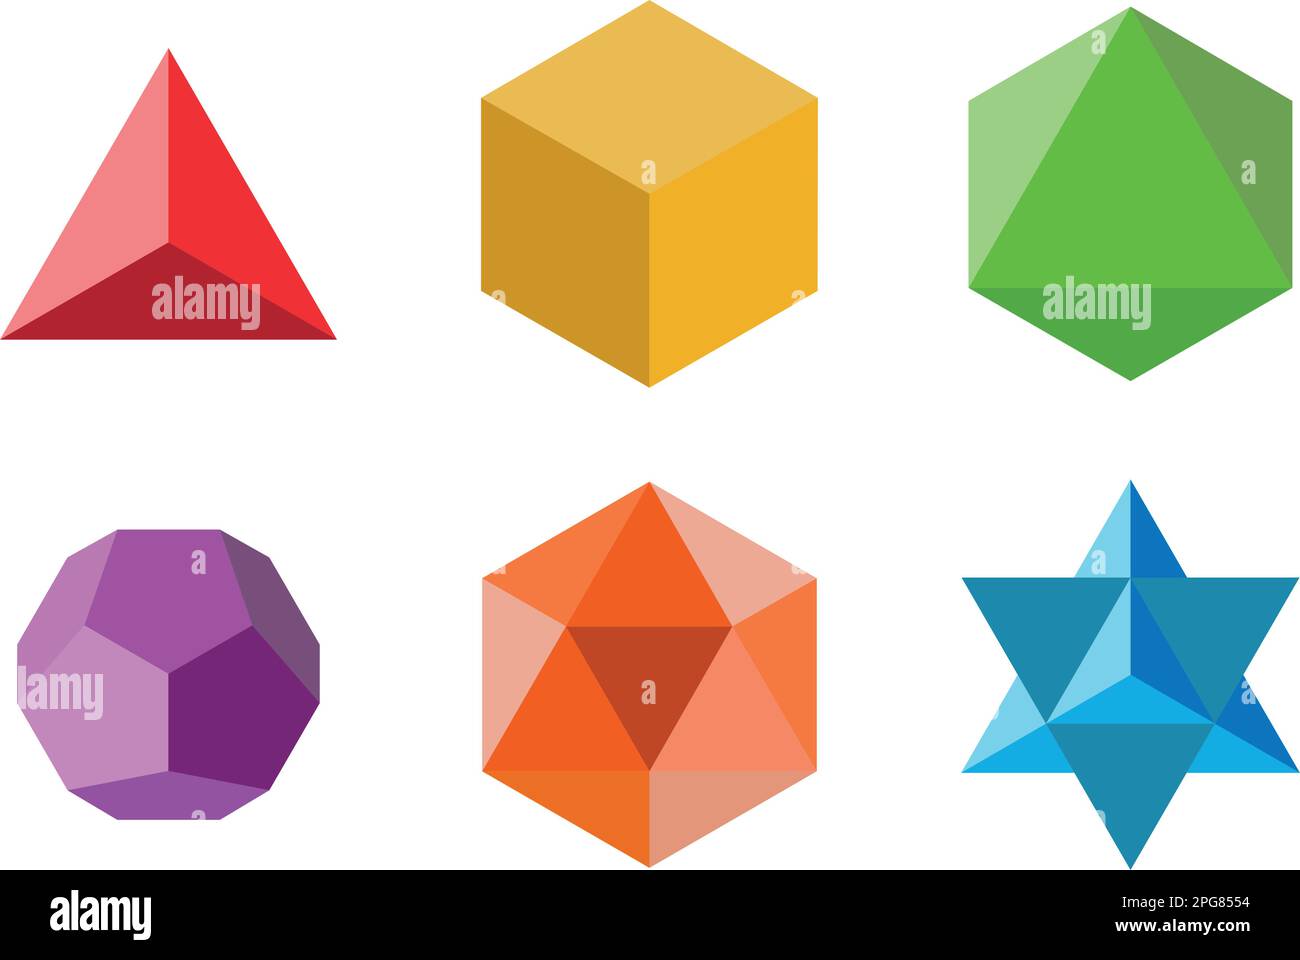 Insieme di elementi geometrici e forme: Piramide, cubo, ottaedro, dodecaedro, icosaedro e Davids Star. Disegni vettoriali a geometria sacra Illustrazione Vettoriale